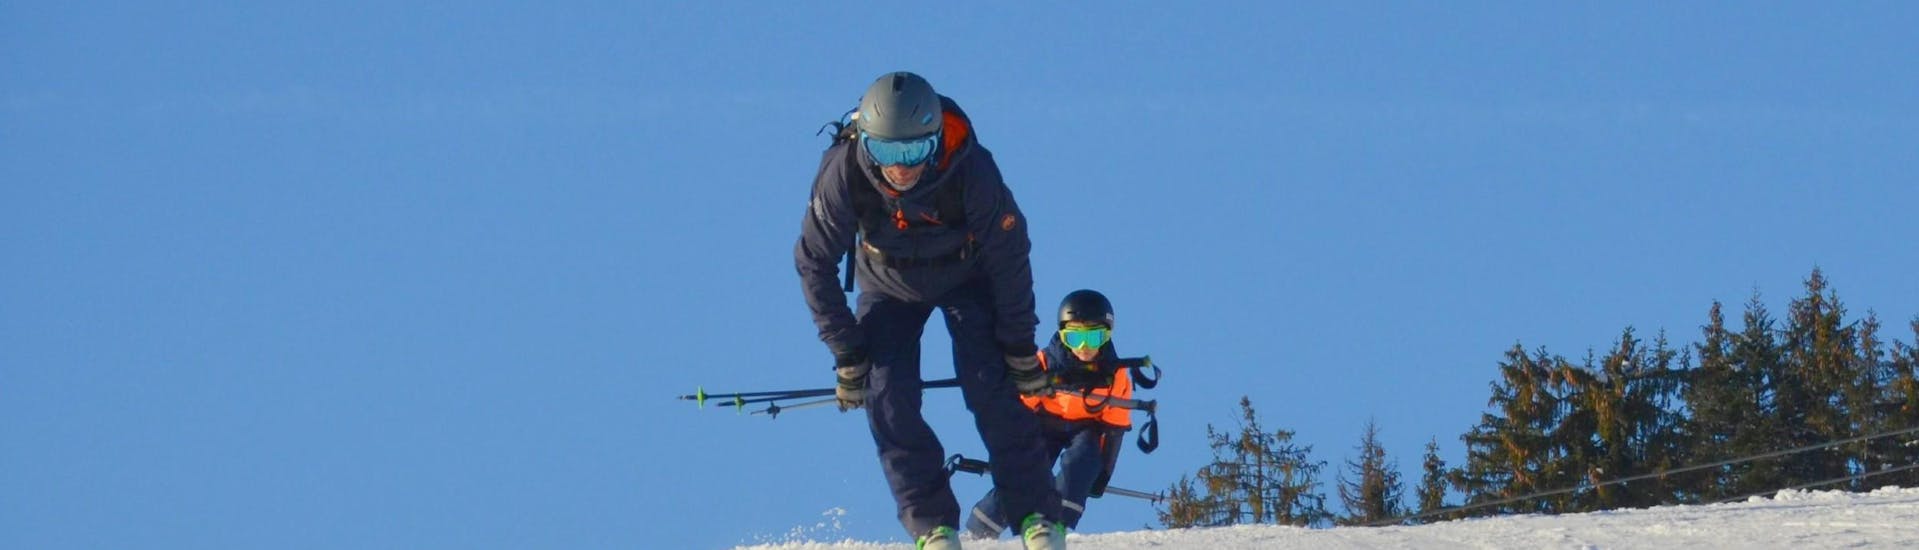 Lezioni private di sci per bambini a partire da 4 anni per tutti i livelli con Ski Sports School Mountainmind Söll.